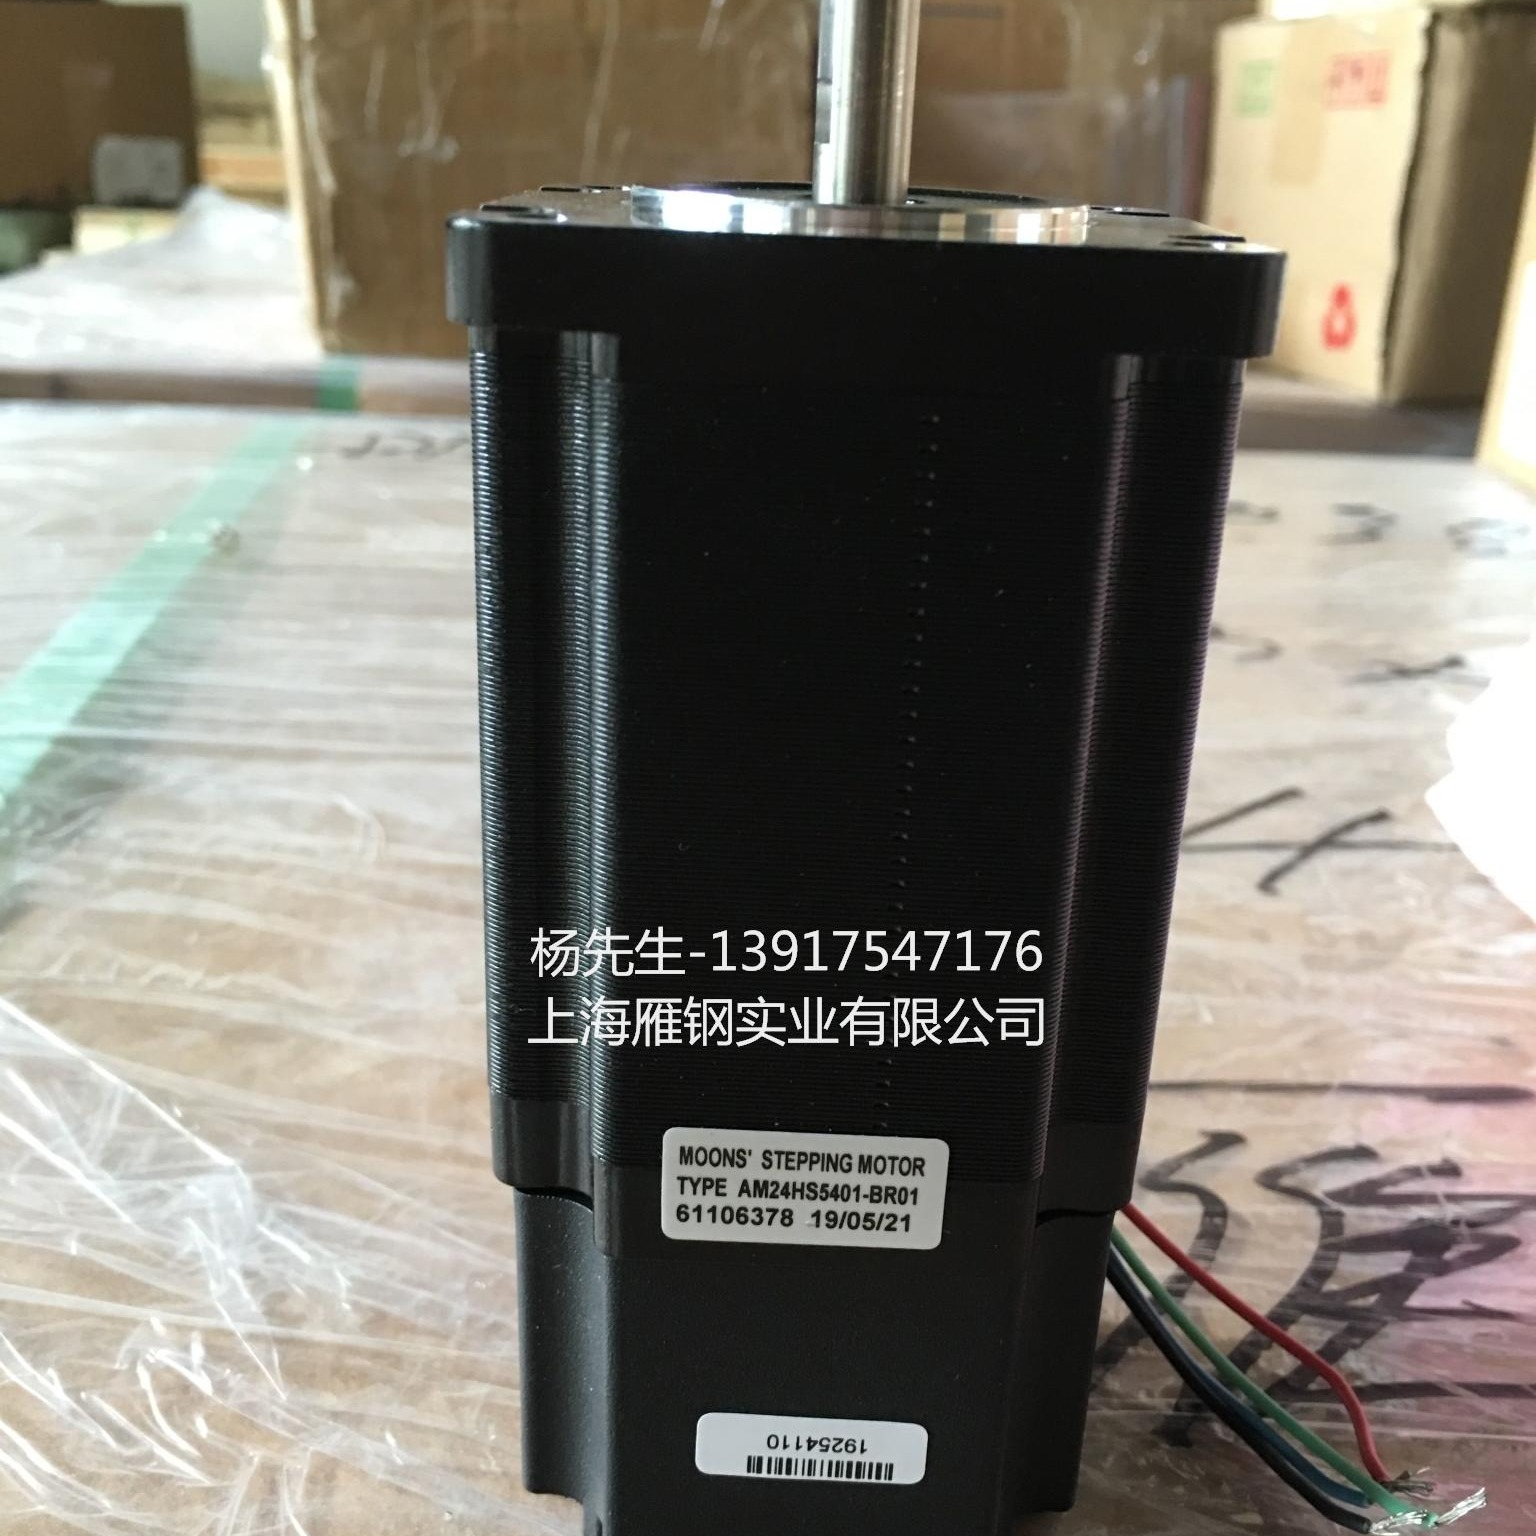 原装鸣志带制动器电机AM23HS2449-BR01上海鸣志代理商现货供应